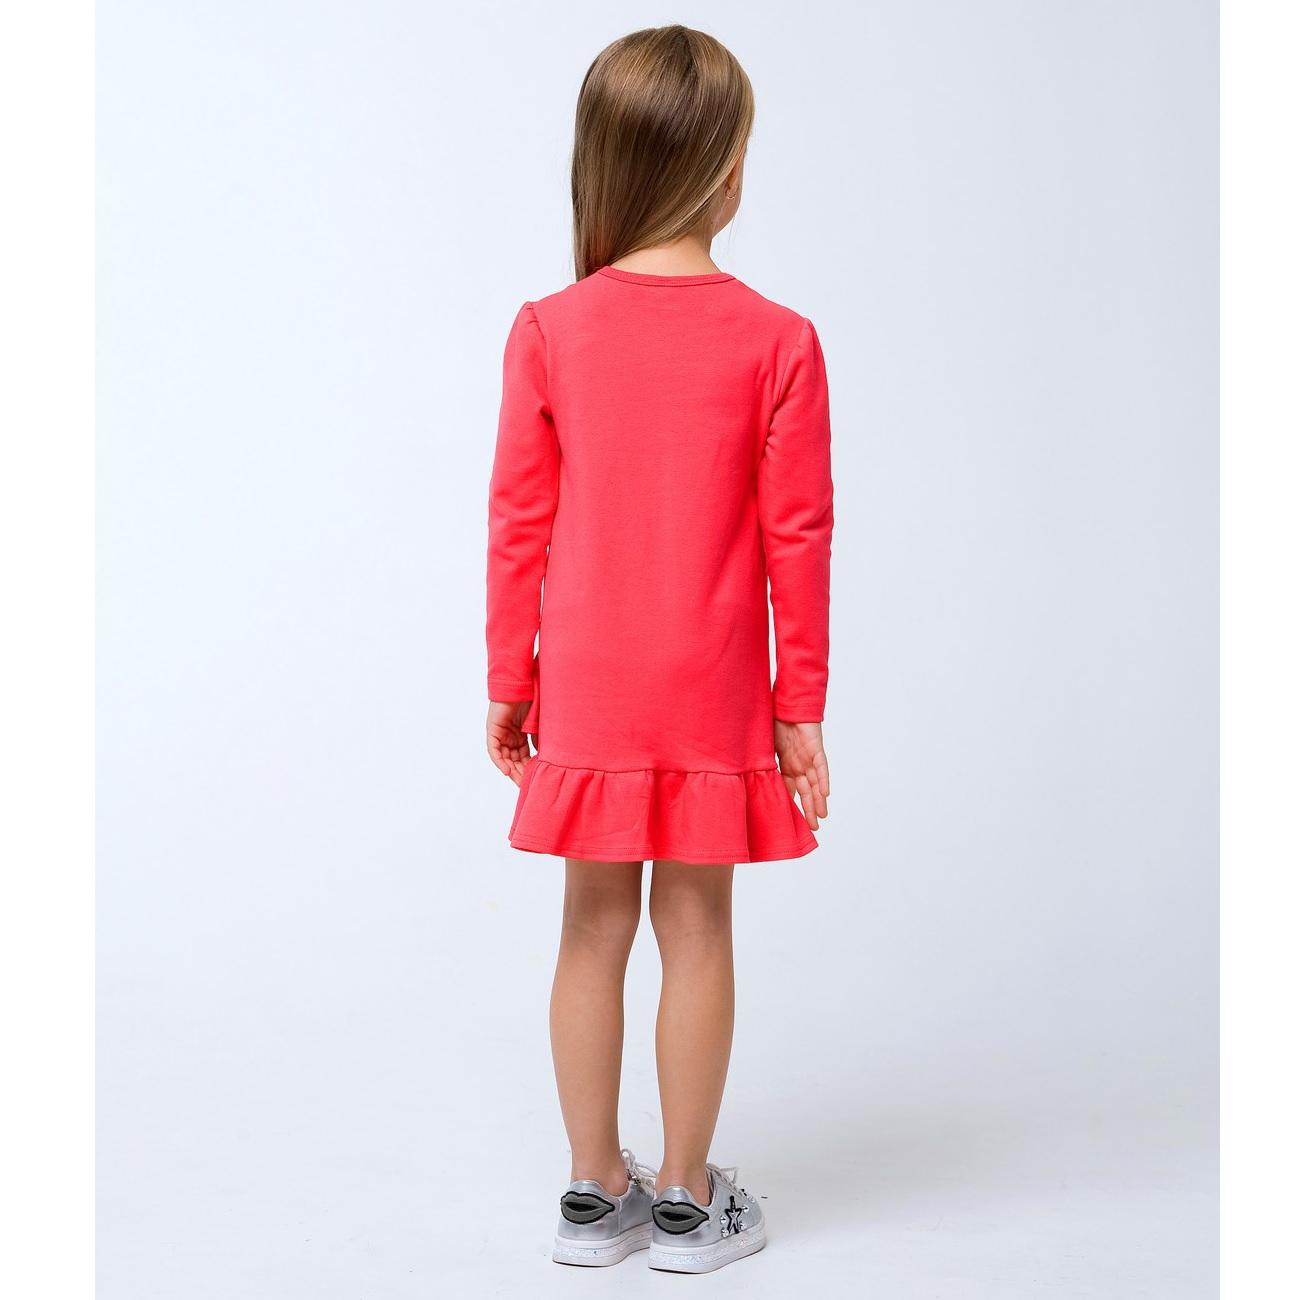 Детское платье для девочки \"Только для девочек\", розовый коралл (120256), Smil (Смил)